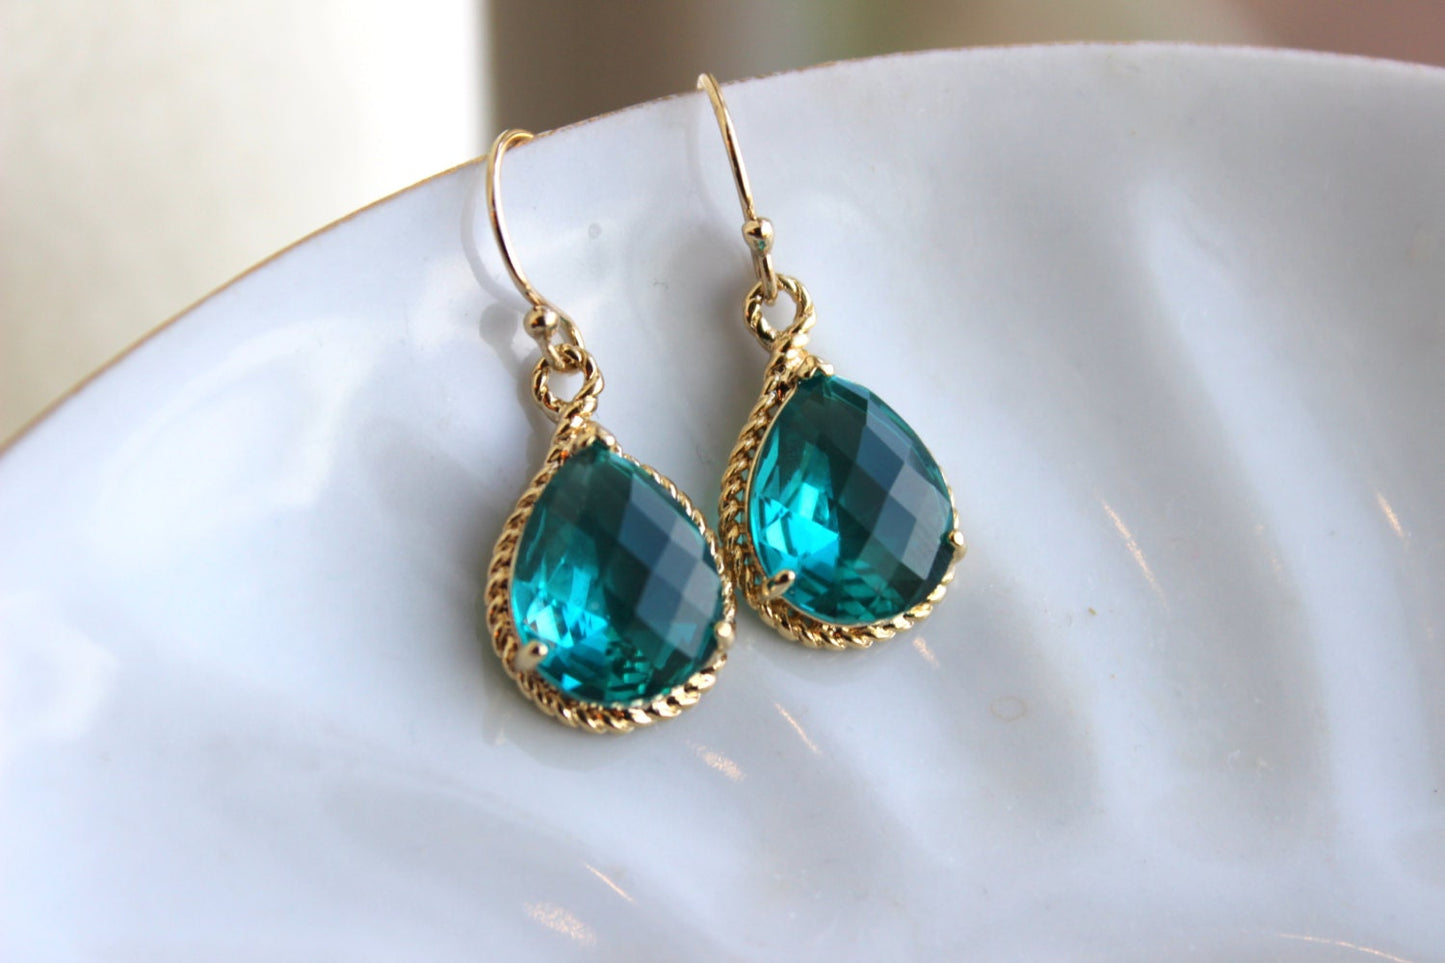 Gold Topaz Earrings Sea Green Jewelry Blue Gold Earrings - Bridesmaid Earrings Topaz Wedding Jewelry Bridal Earrings - Topaz Wedding